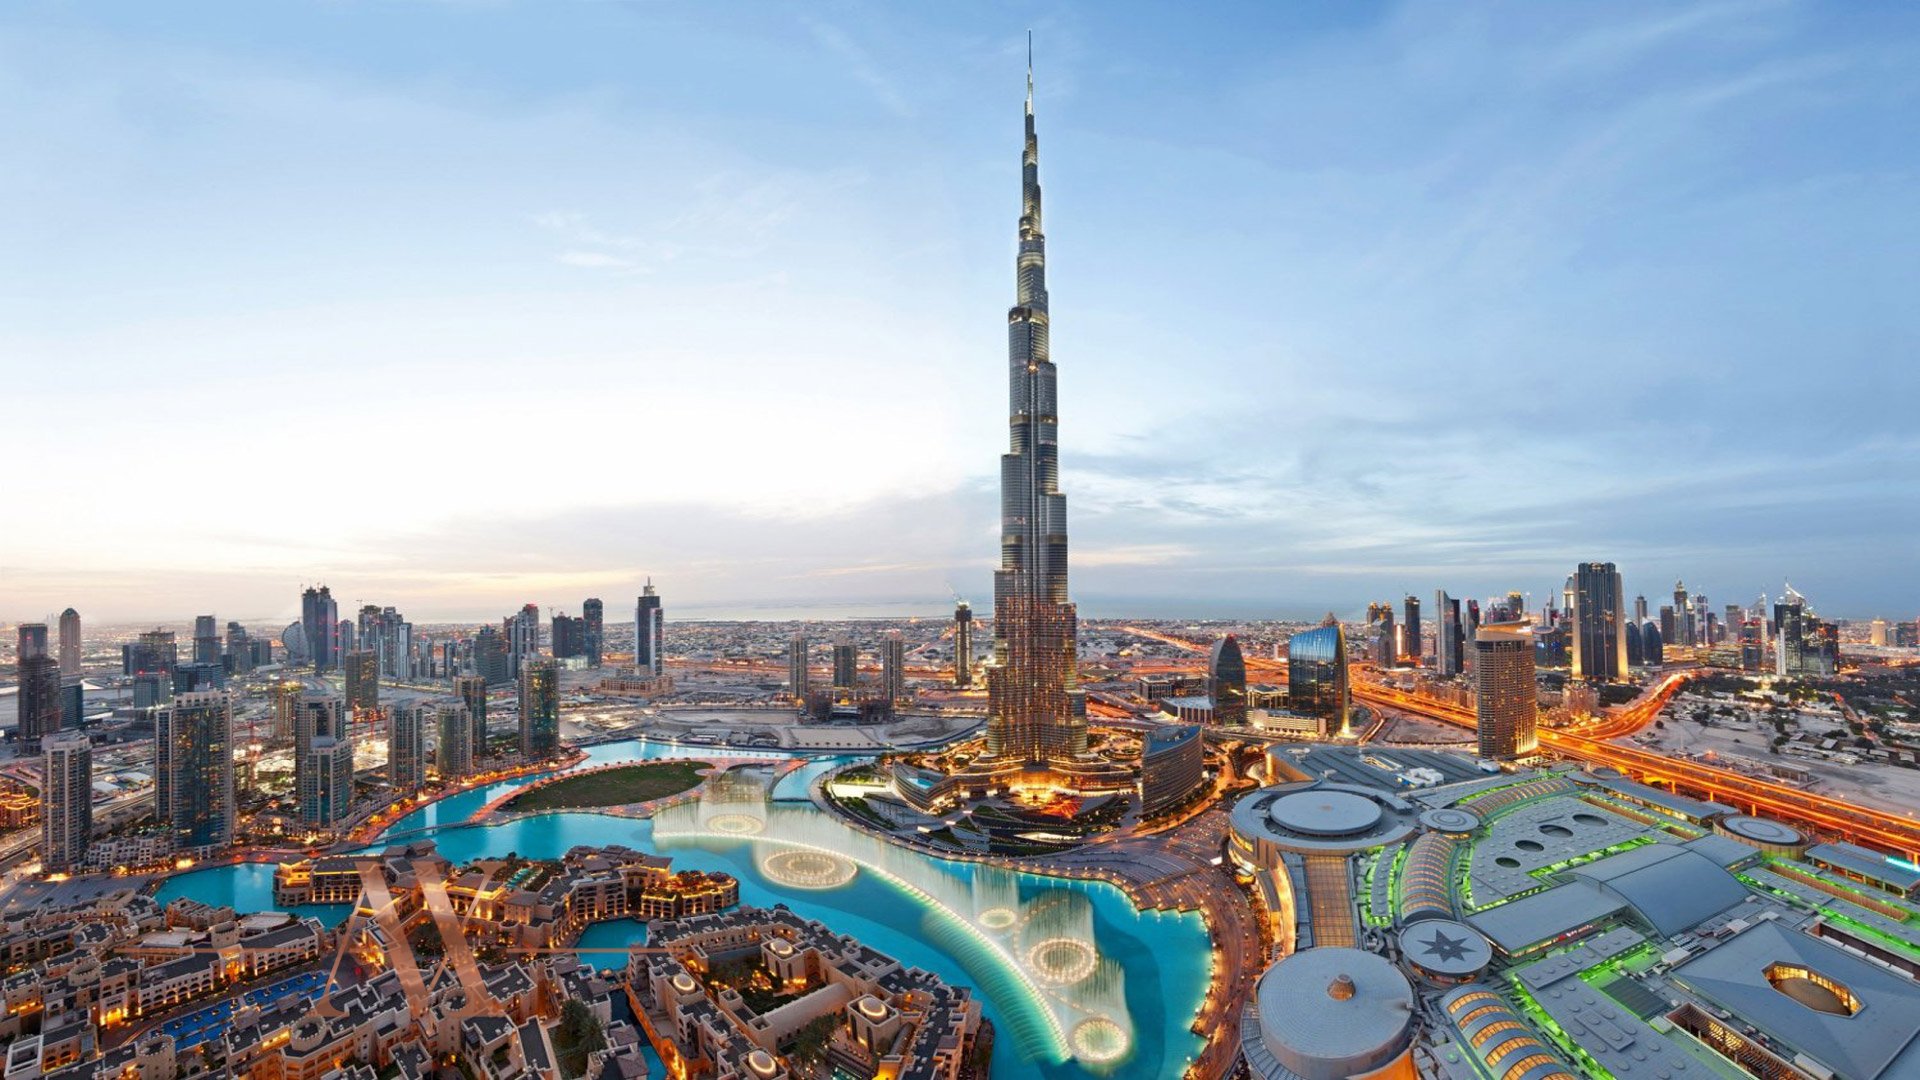 W RESIDENCES DUBAI – DOWNTOWN by Dar Al Arkan in Downtown Dubai (Downtown Burj Dubai), Dubai, UAE - 2